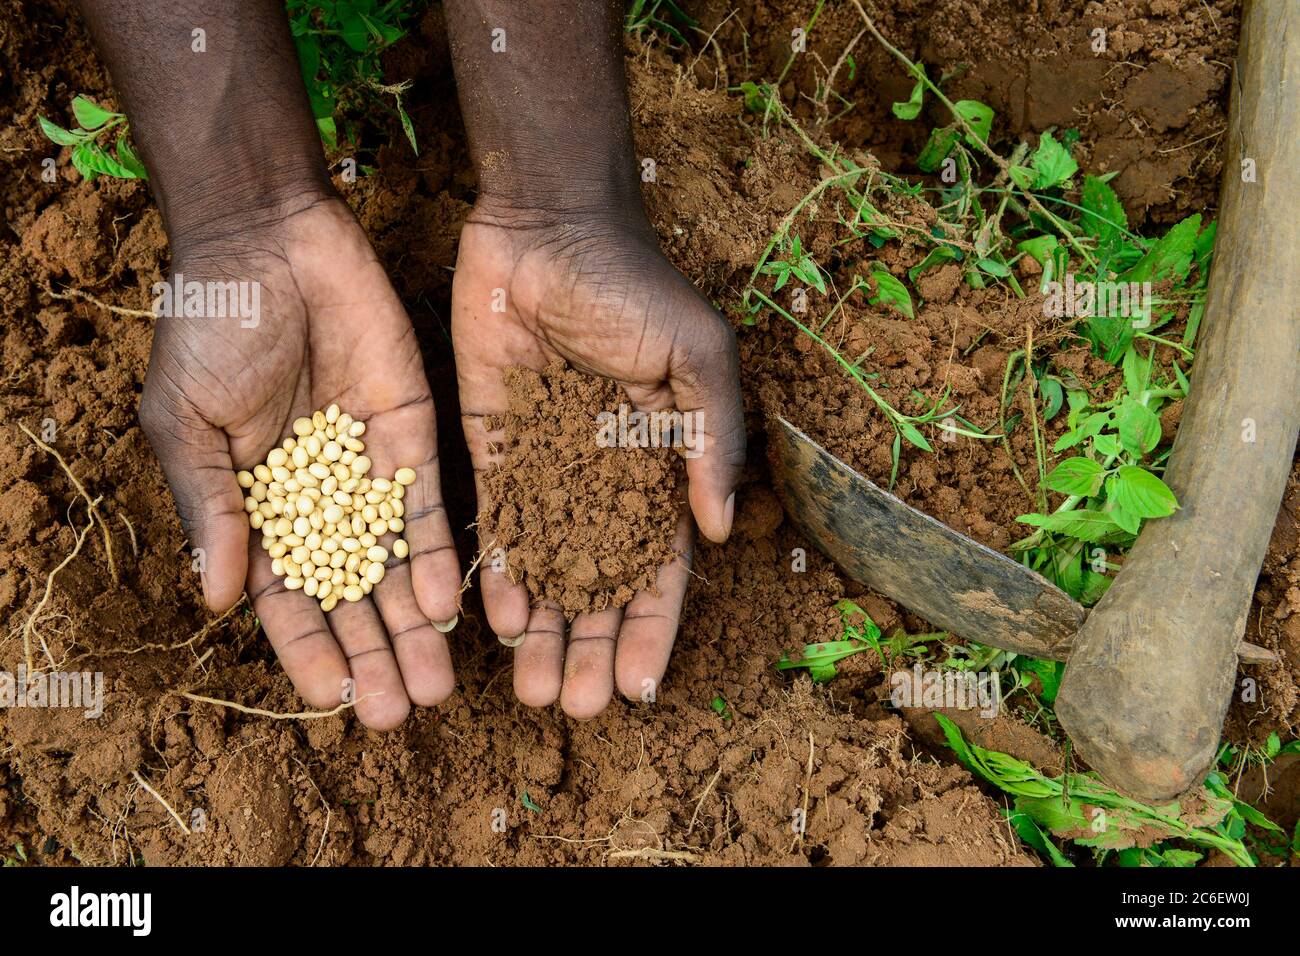 BURKINA FASO, Bobo Dioulasso, hand with soy hybrid seeds and soil / Aussaat von Soja Hybrid Saatgut, Haende mit Saatgut und Boden Stock Photo